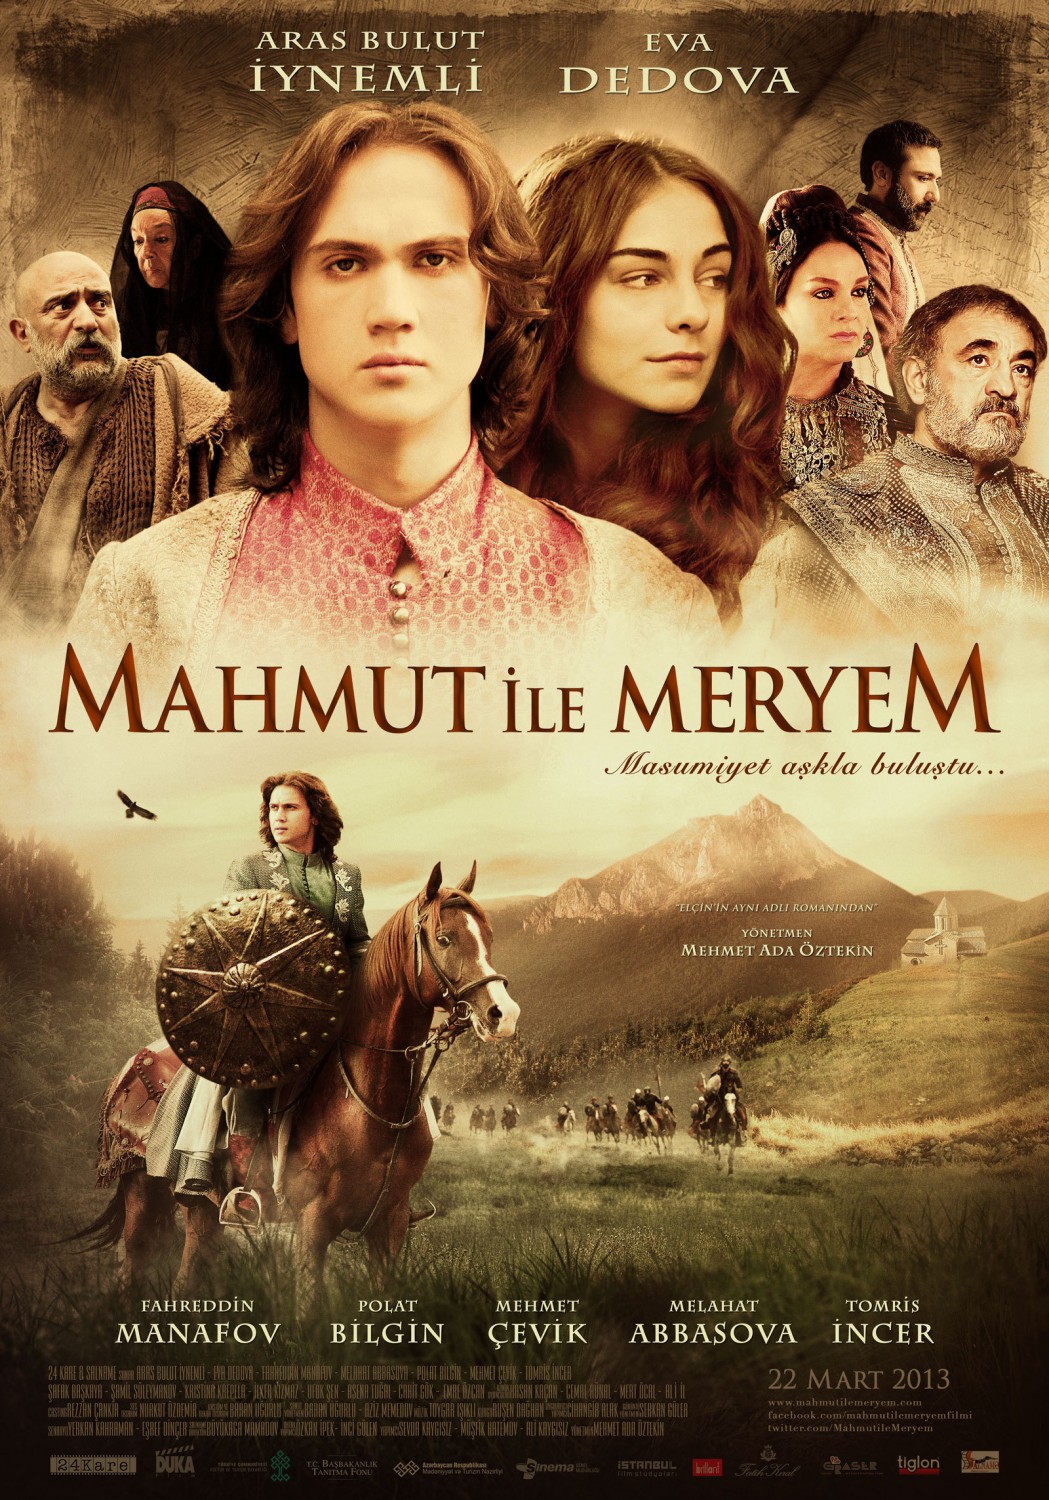 Extra Large Movie Poster Image for Mahmut ile Meryem (#2 of 2)